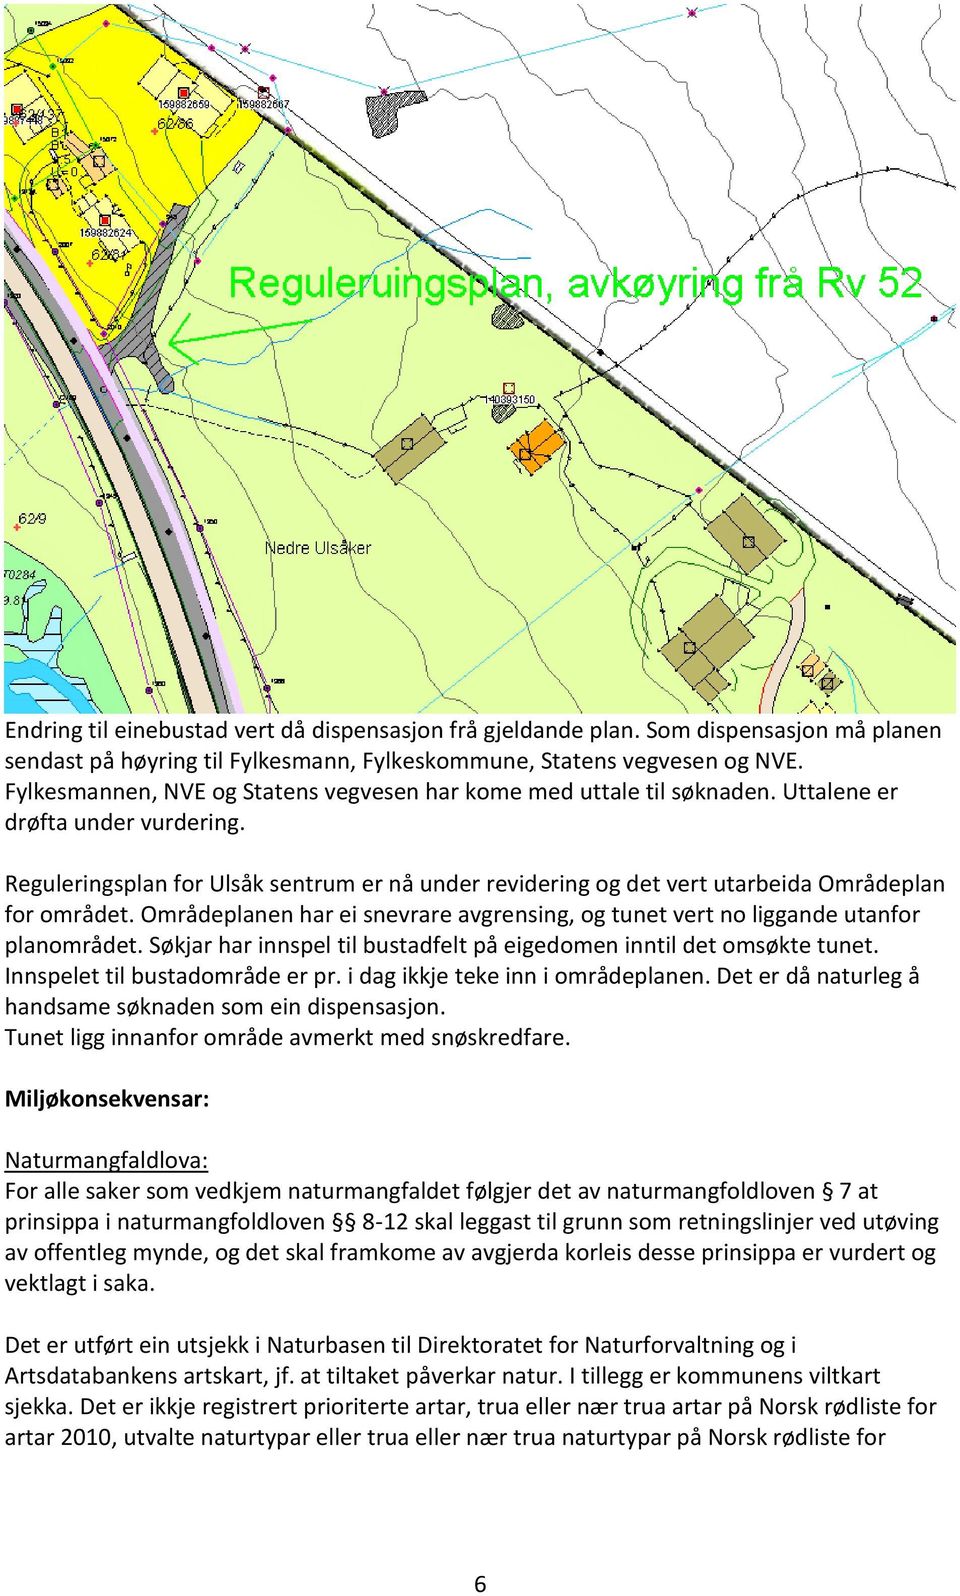 Reguleringsplan for Ulsåk sentrum er nå under revidering og det vert utarbeida Områdeplan for området. Områdeplanen har ei snevrare avgrensing, og tunet vert no liggande utanfor planområdet.